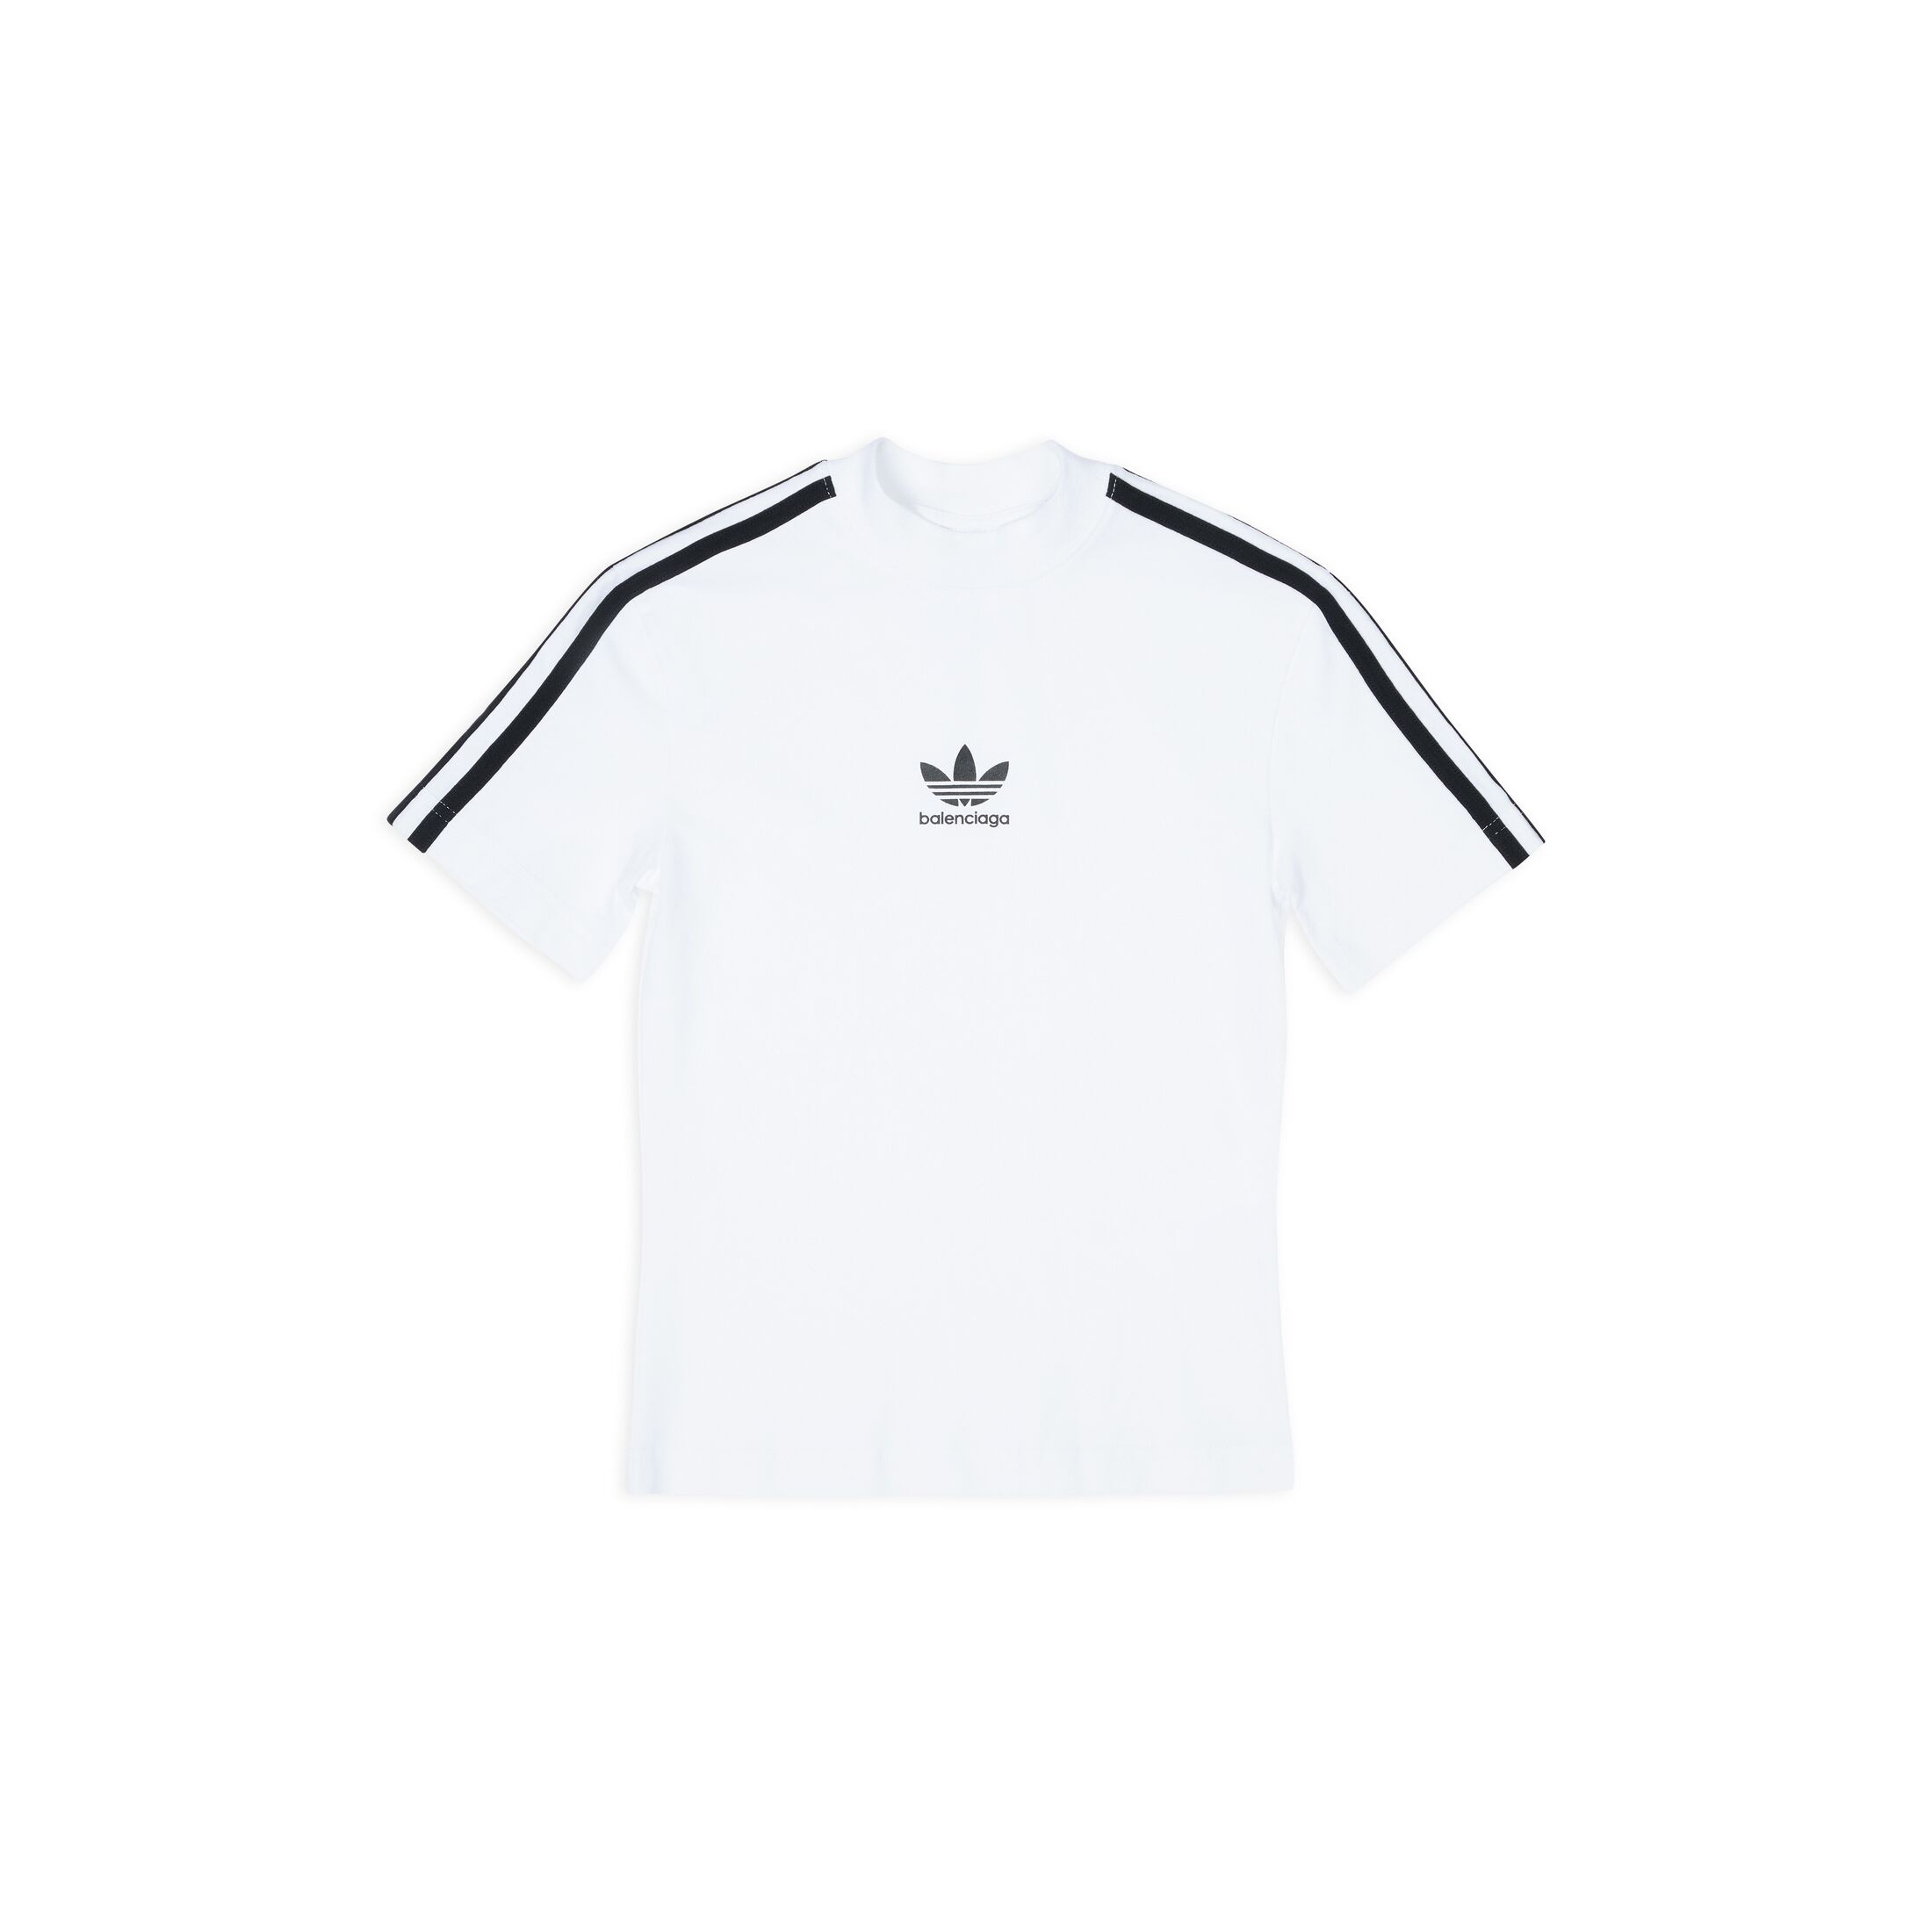 Balenciaga x adidas Shrunk T-Shirt White